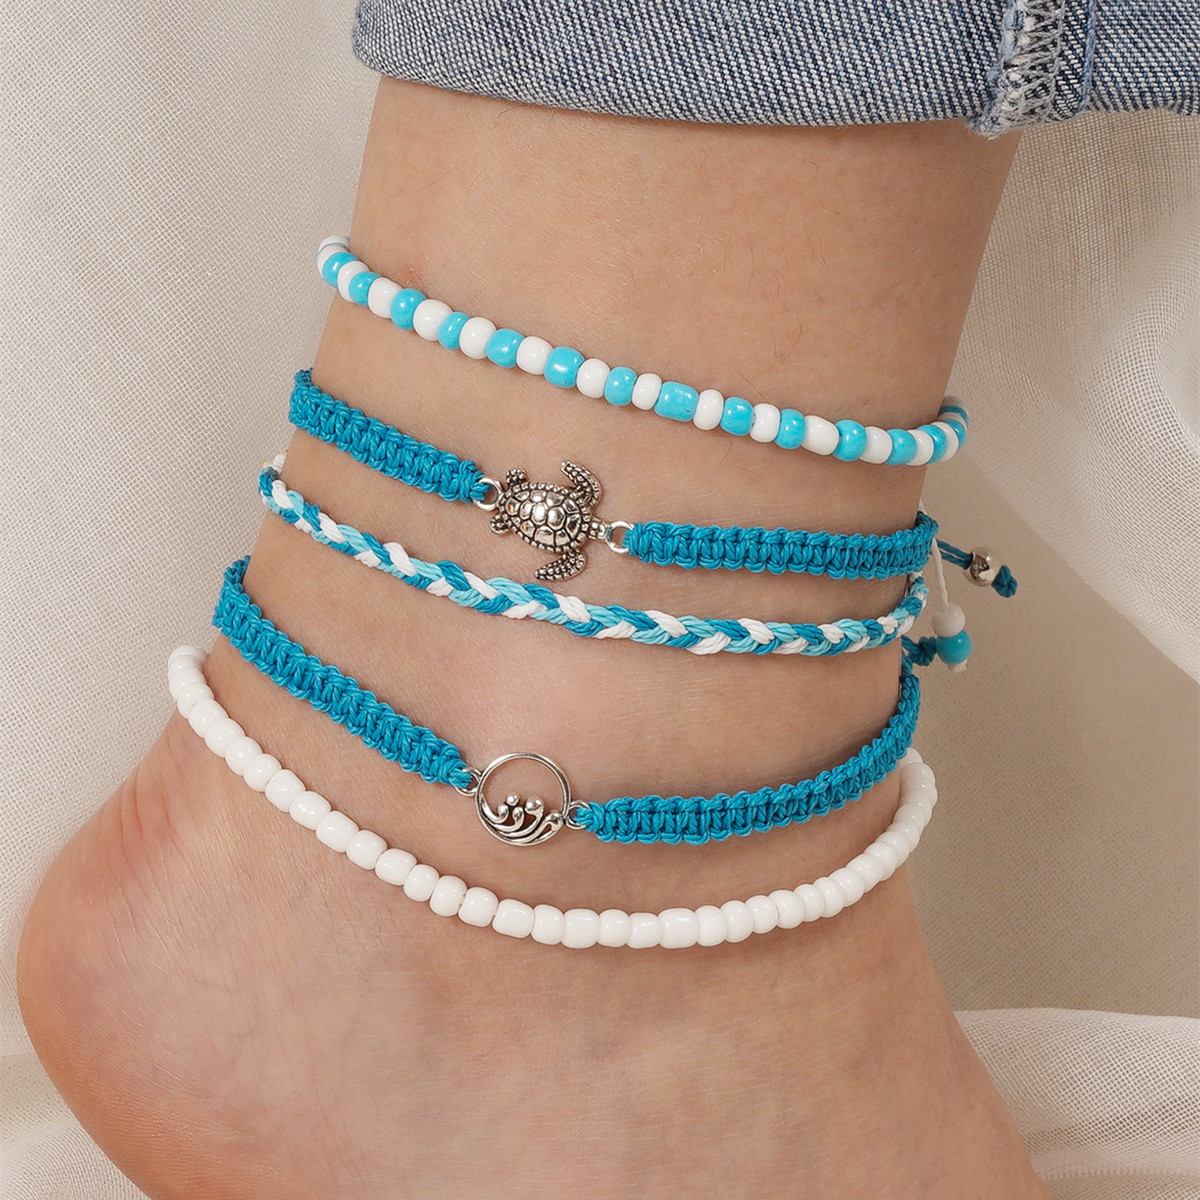 2:Blue anklet